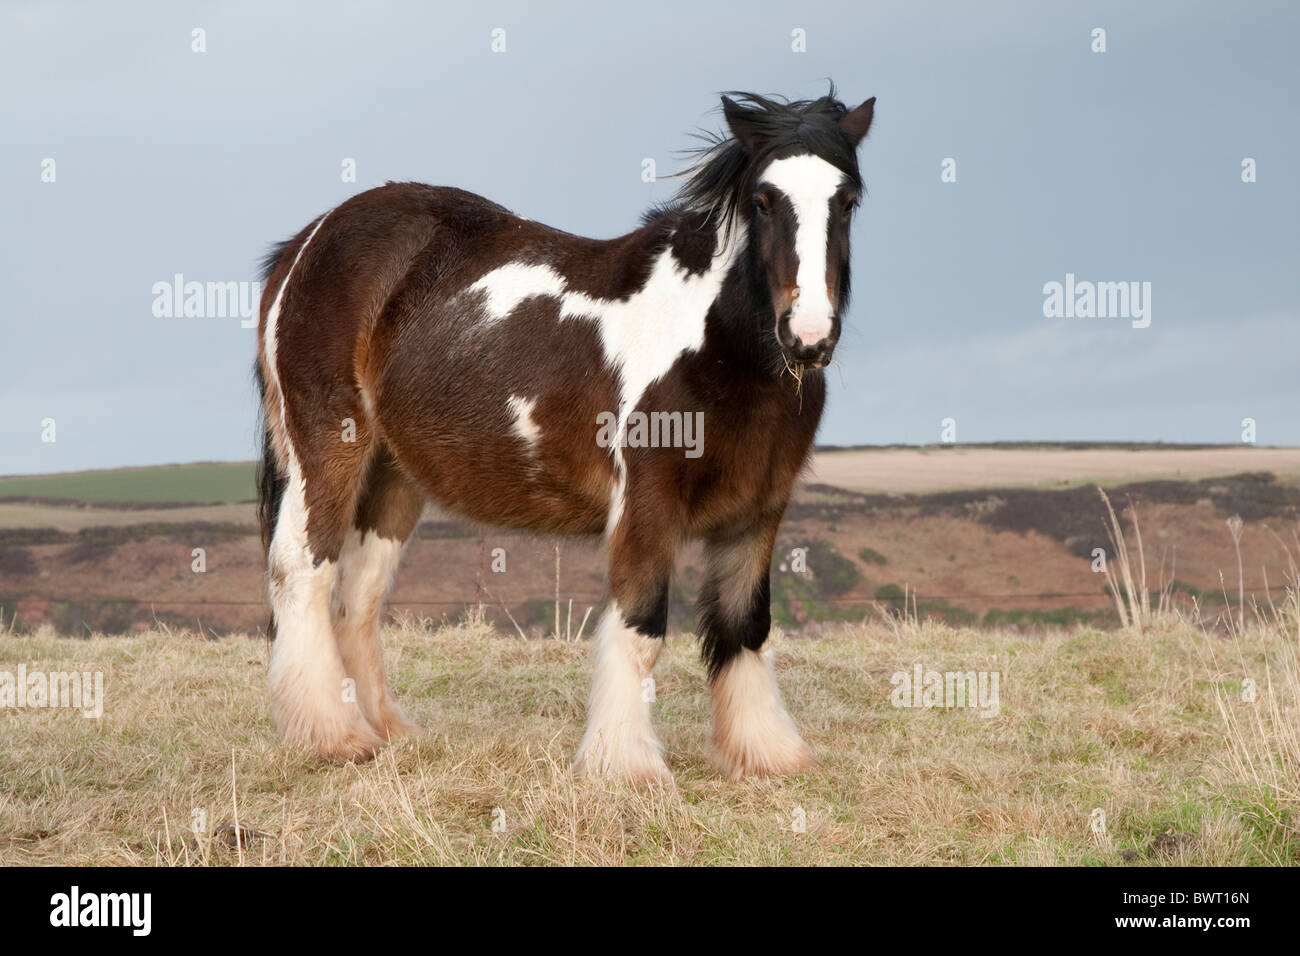 Welsh ponis en el campo de un agricultor mirar fijamente a la cámara Foto de stock